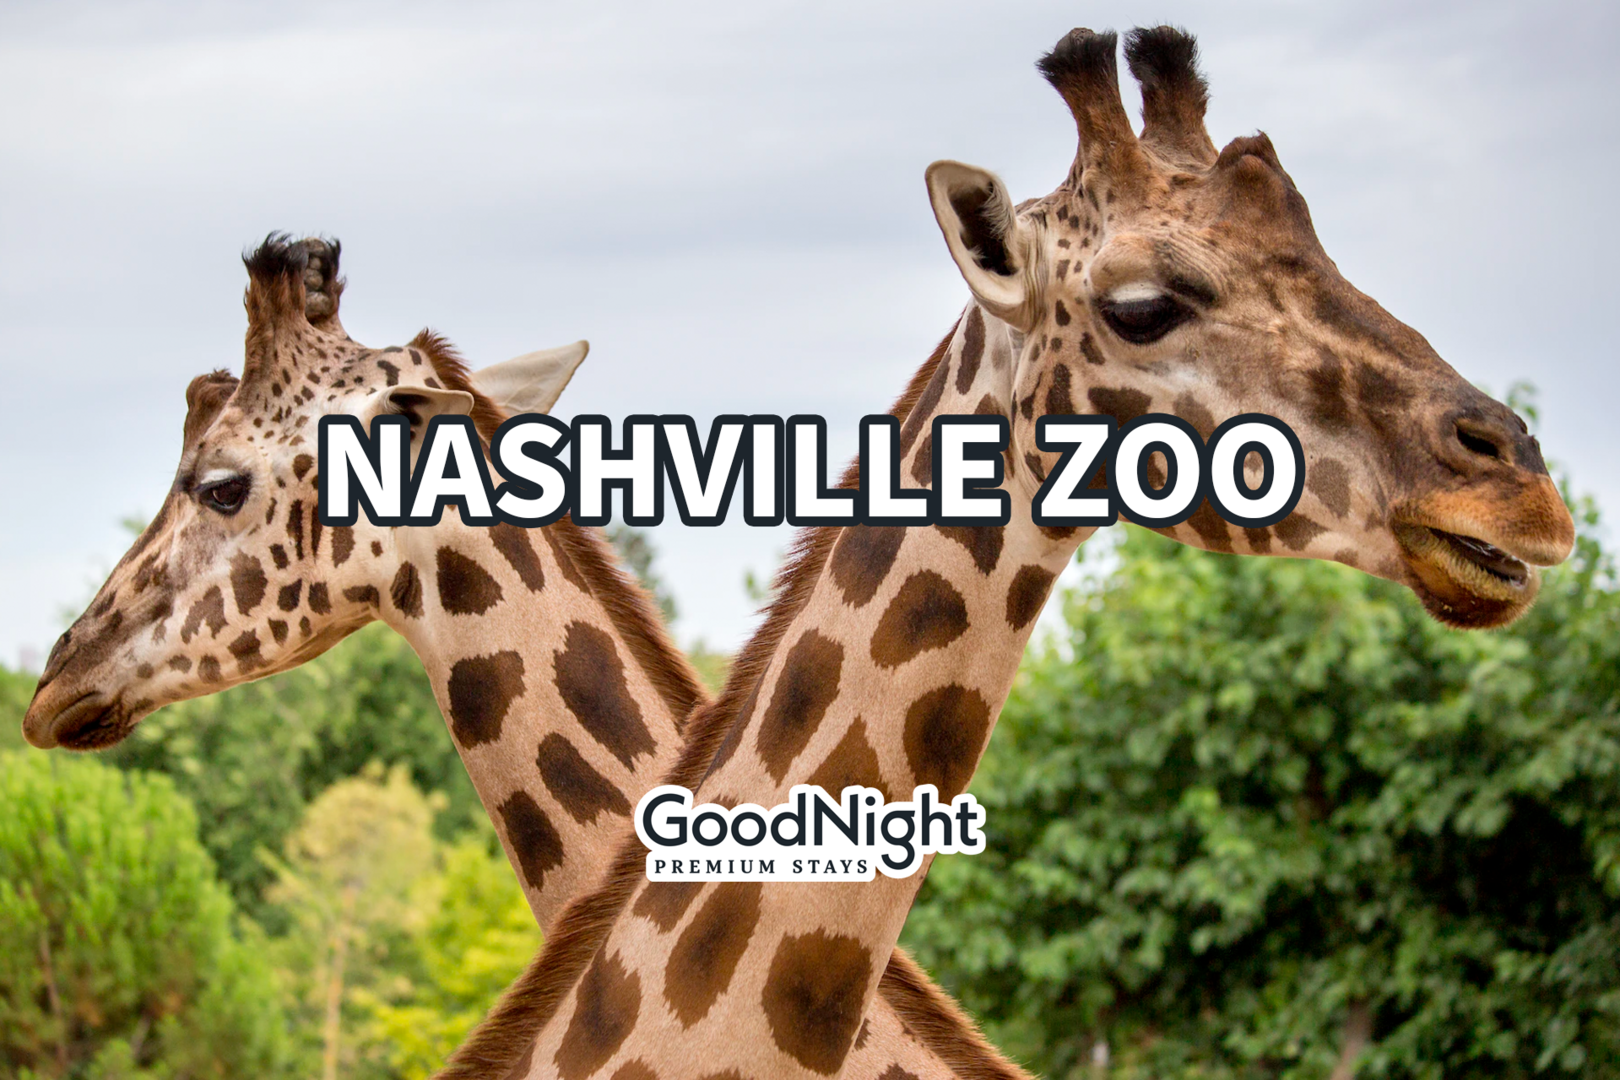 13 mins: Nashville Zoo